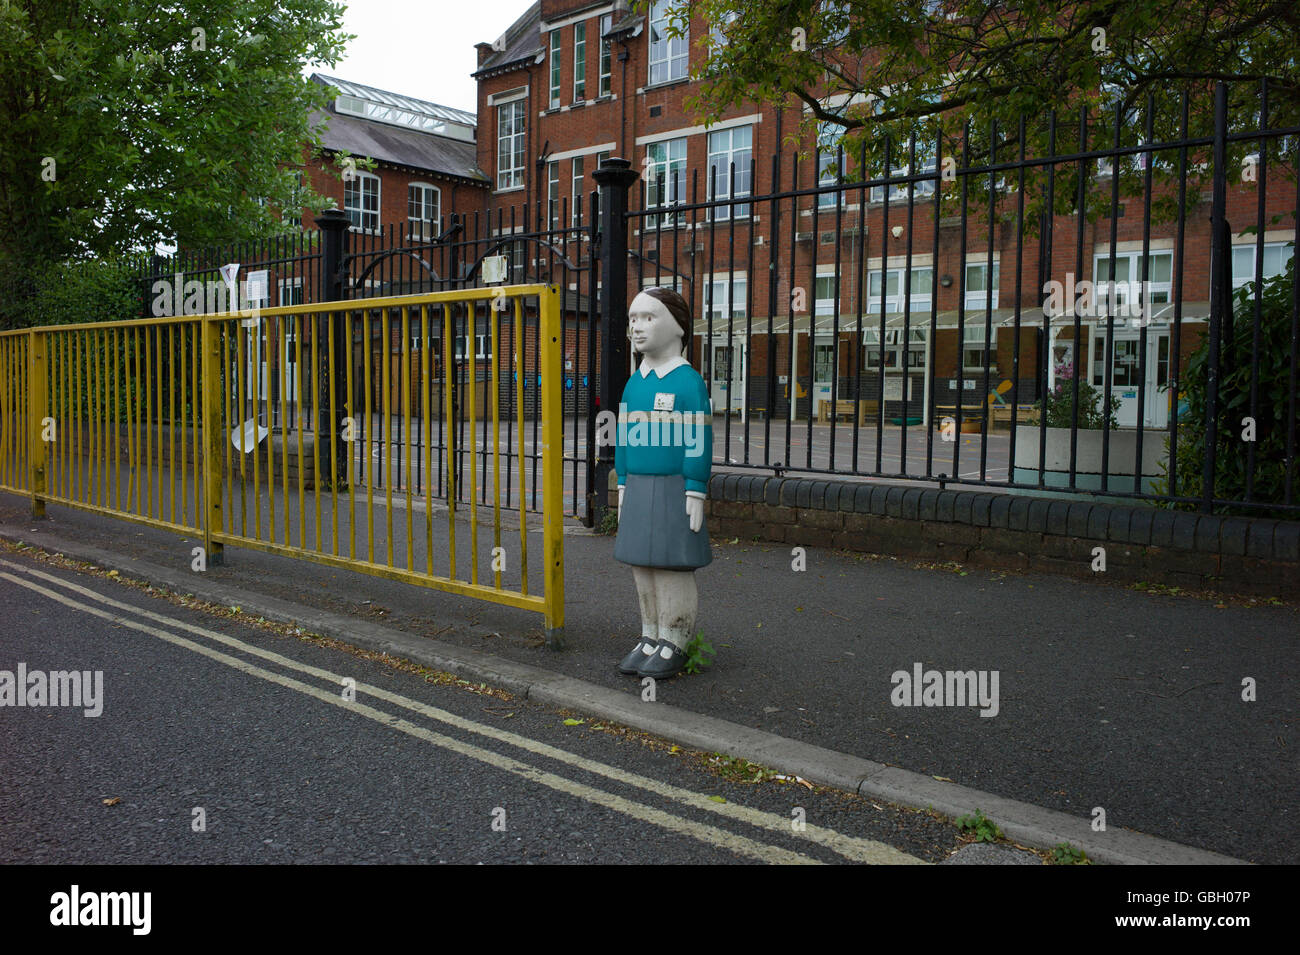 Sicherheit Schulkinder Statue außerhalb der Schule zu schnelles fahren zu vermeiden Stockfoto